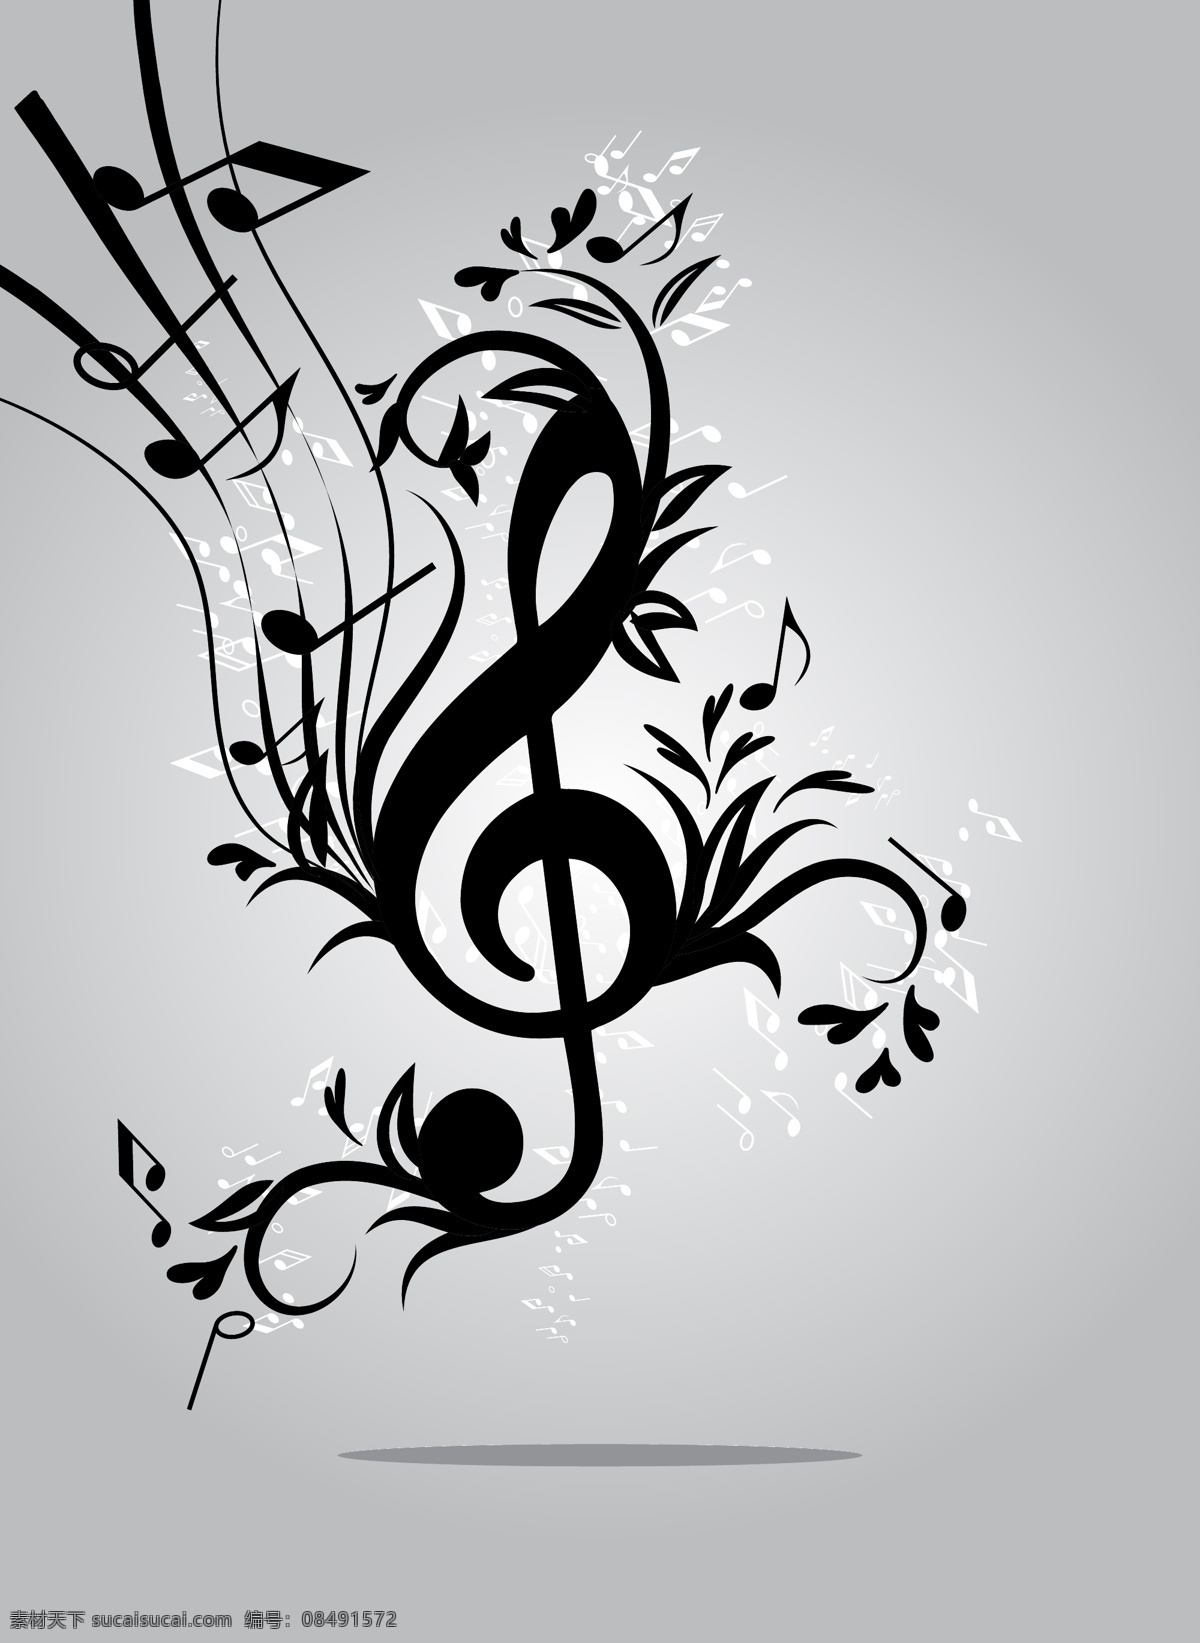 音乐背景 音乐标签 cd 五线谱 音符 音乐符号 music 音乐标志 音乐 矢量音乐 舞蹈音乐 文化艺术 矢量